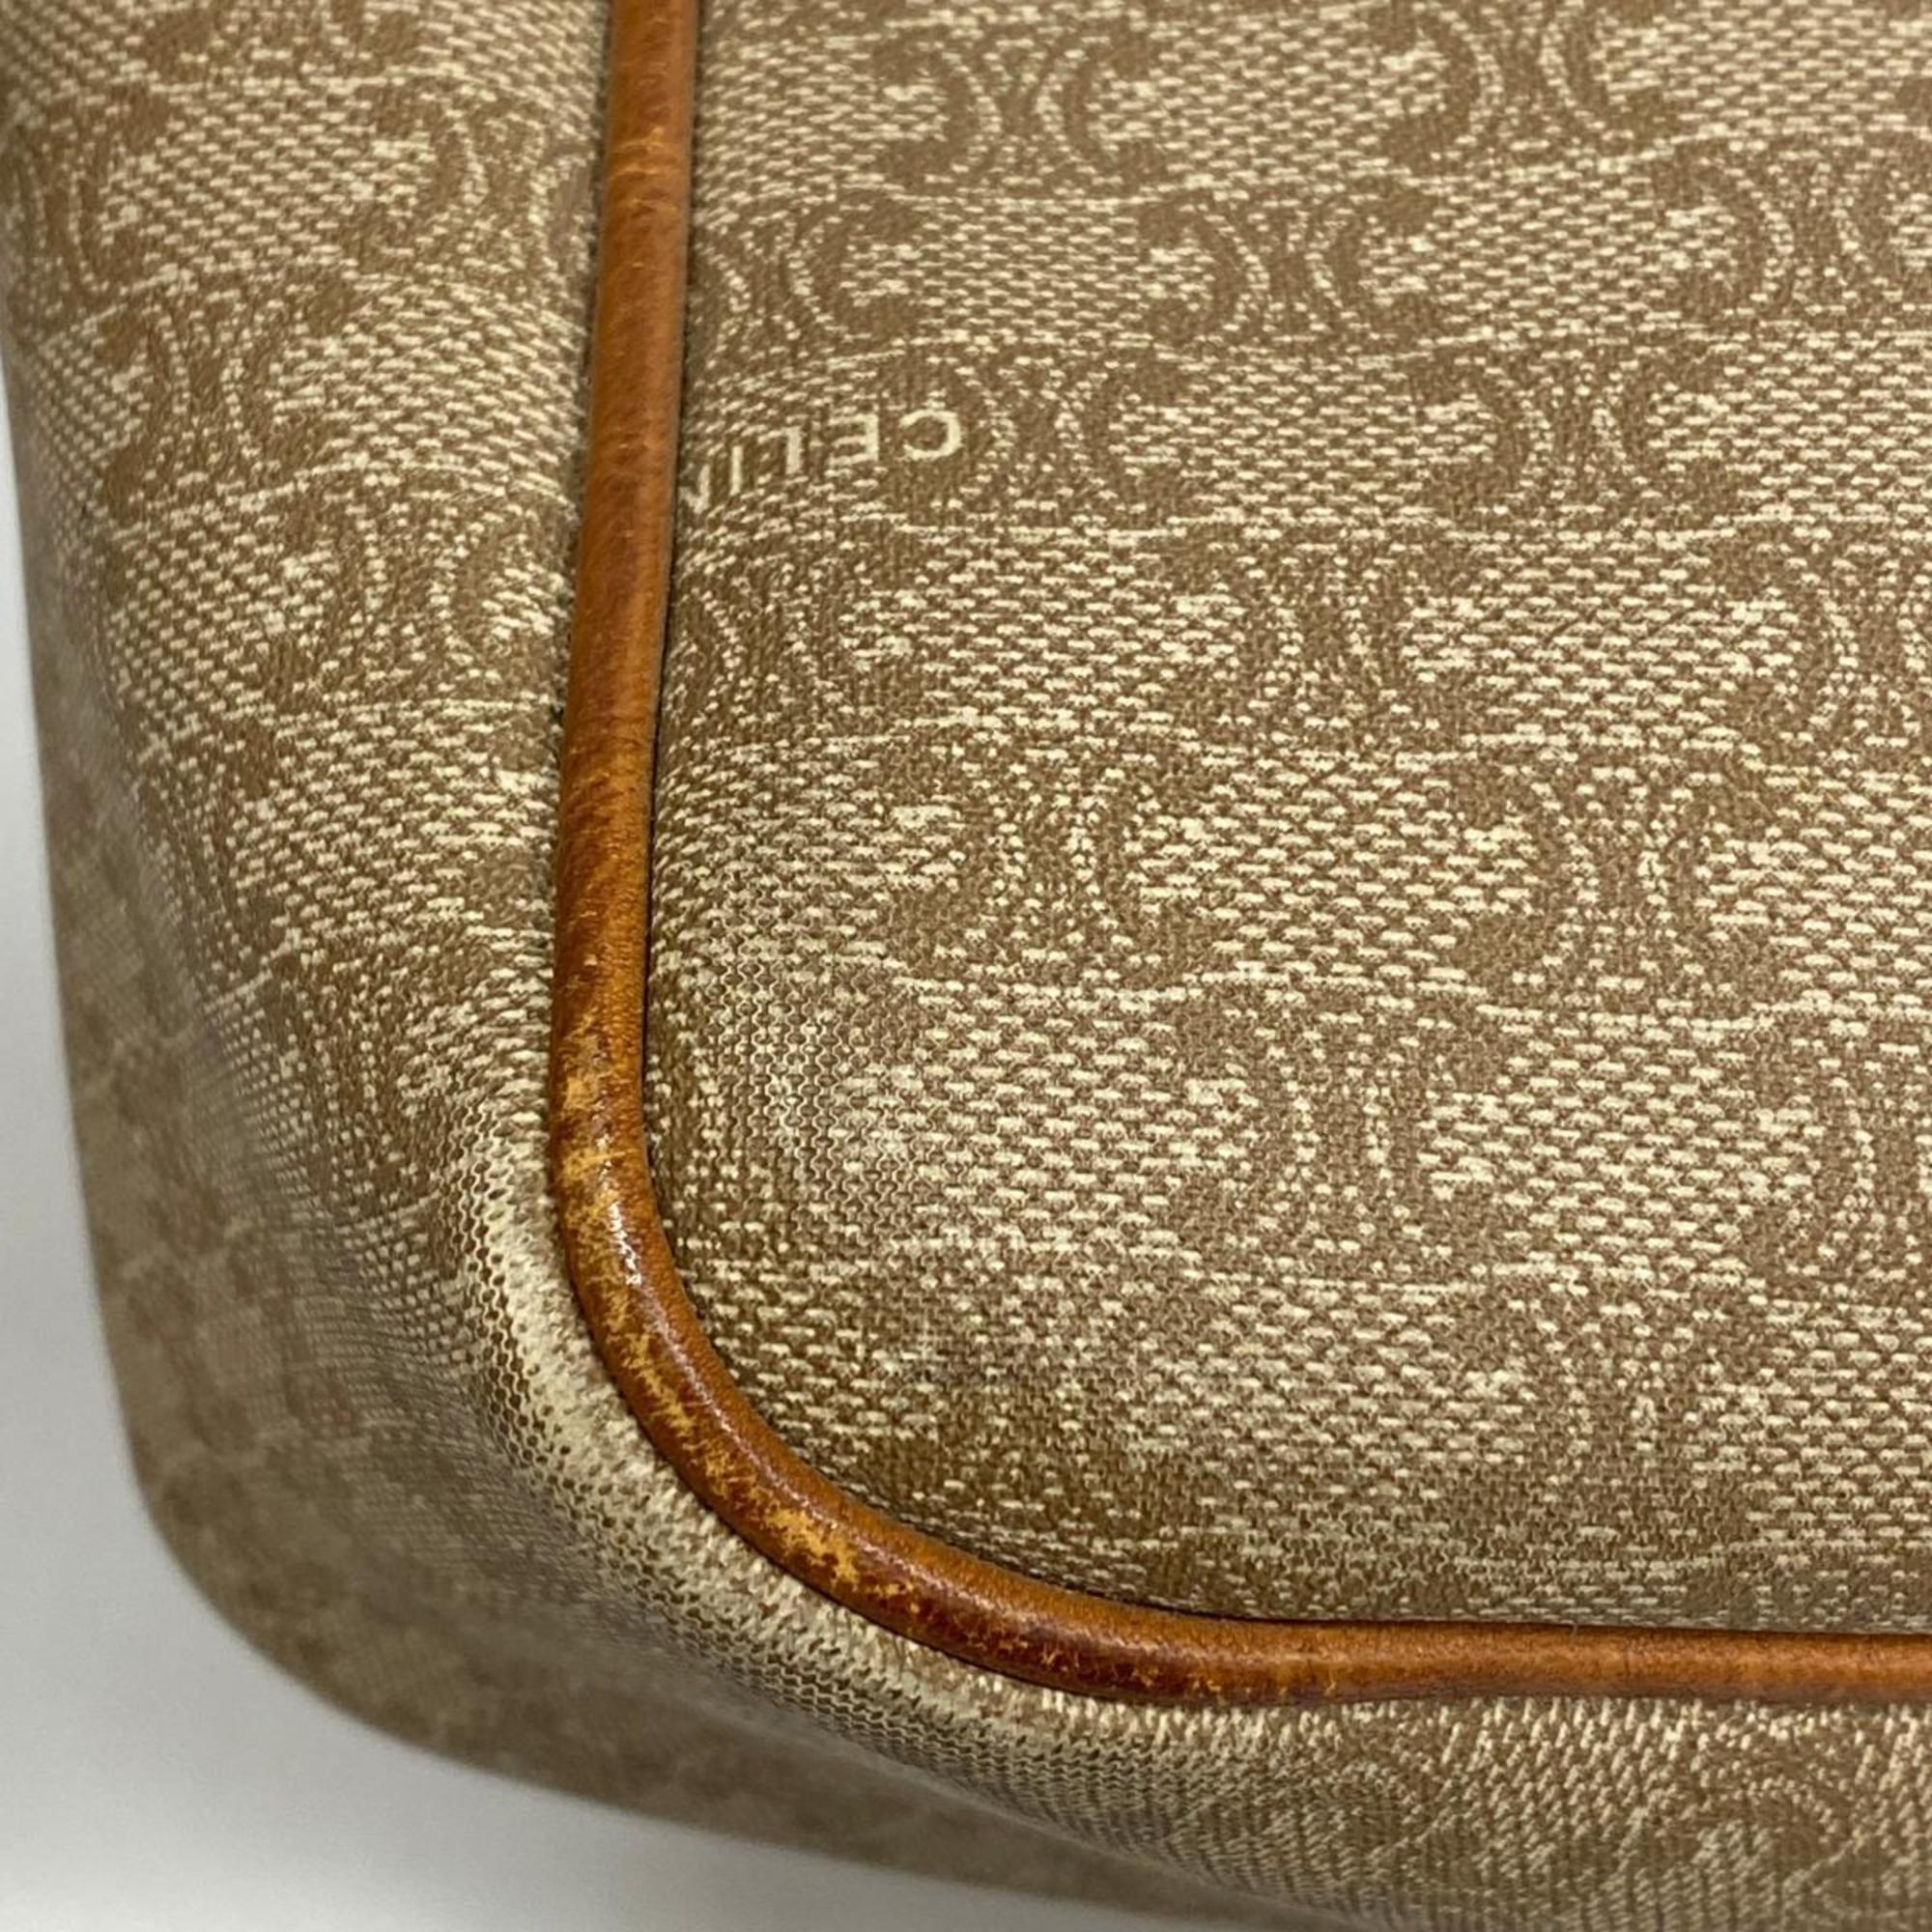 Celine handbag macadam leather light brown ladies